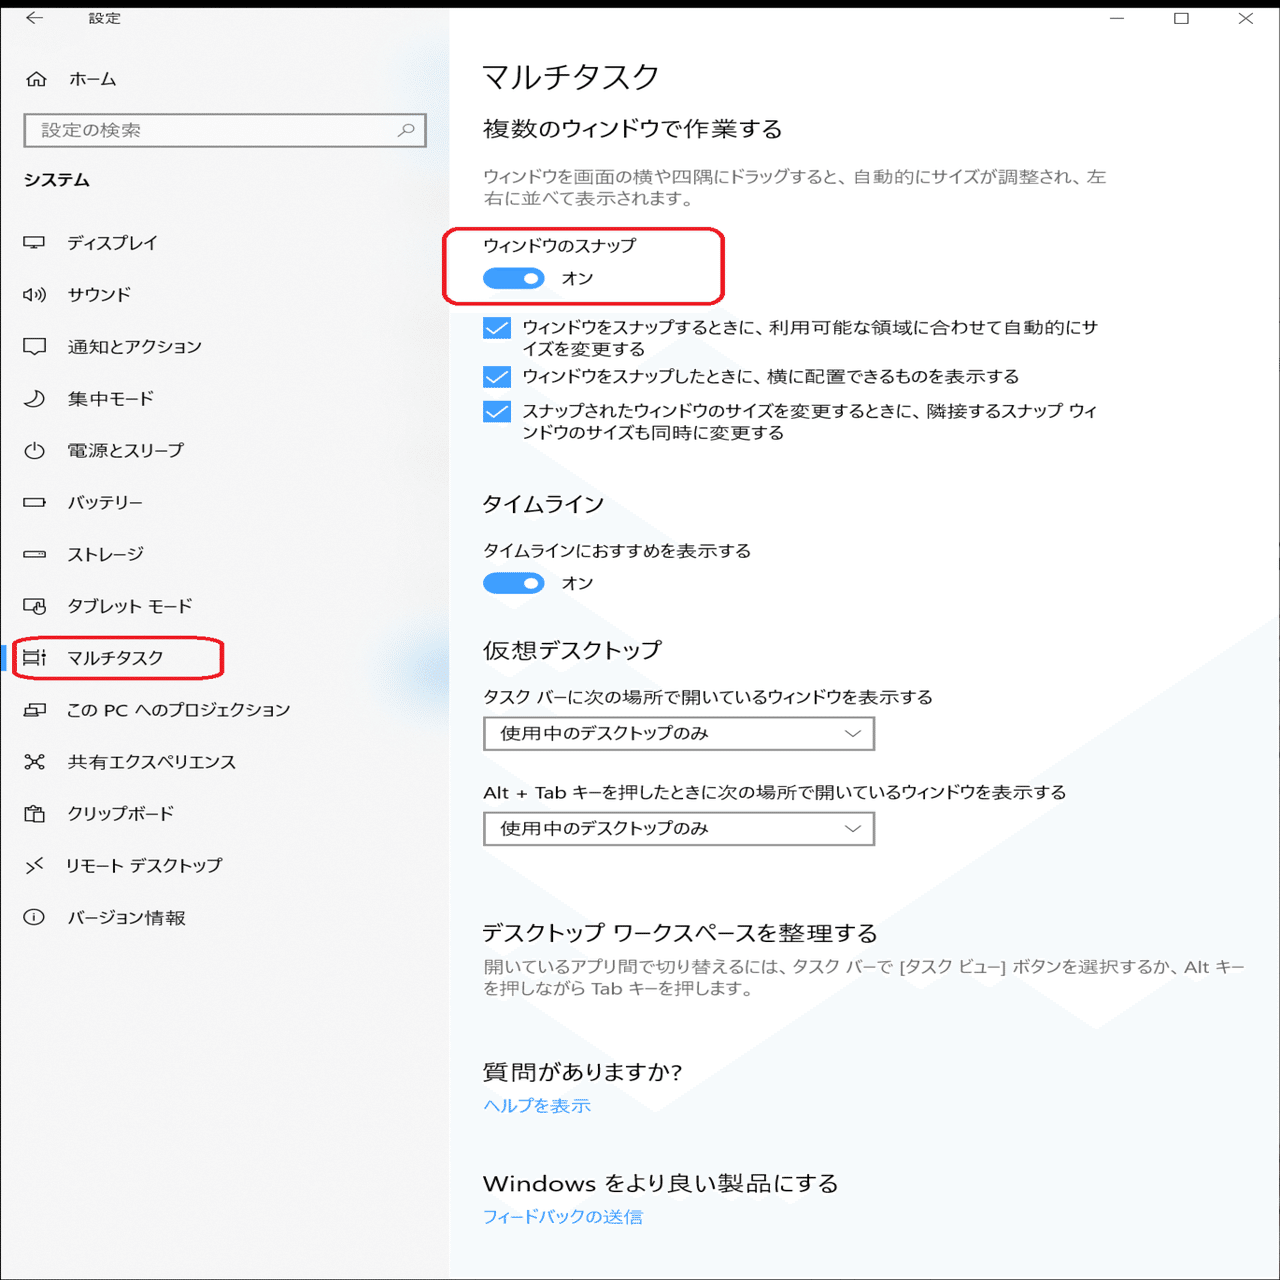 Windows10で前回終了時のウィンドウサイズが記憶されないときの対処方法 Yoshiteru Note